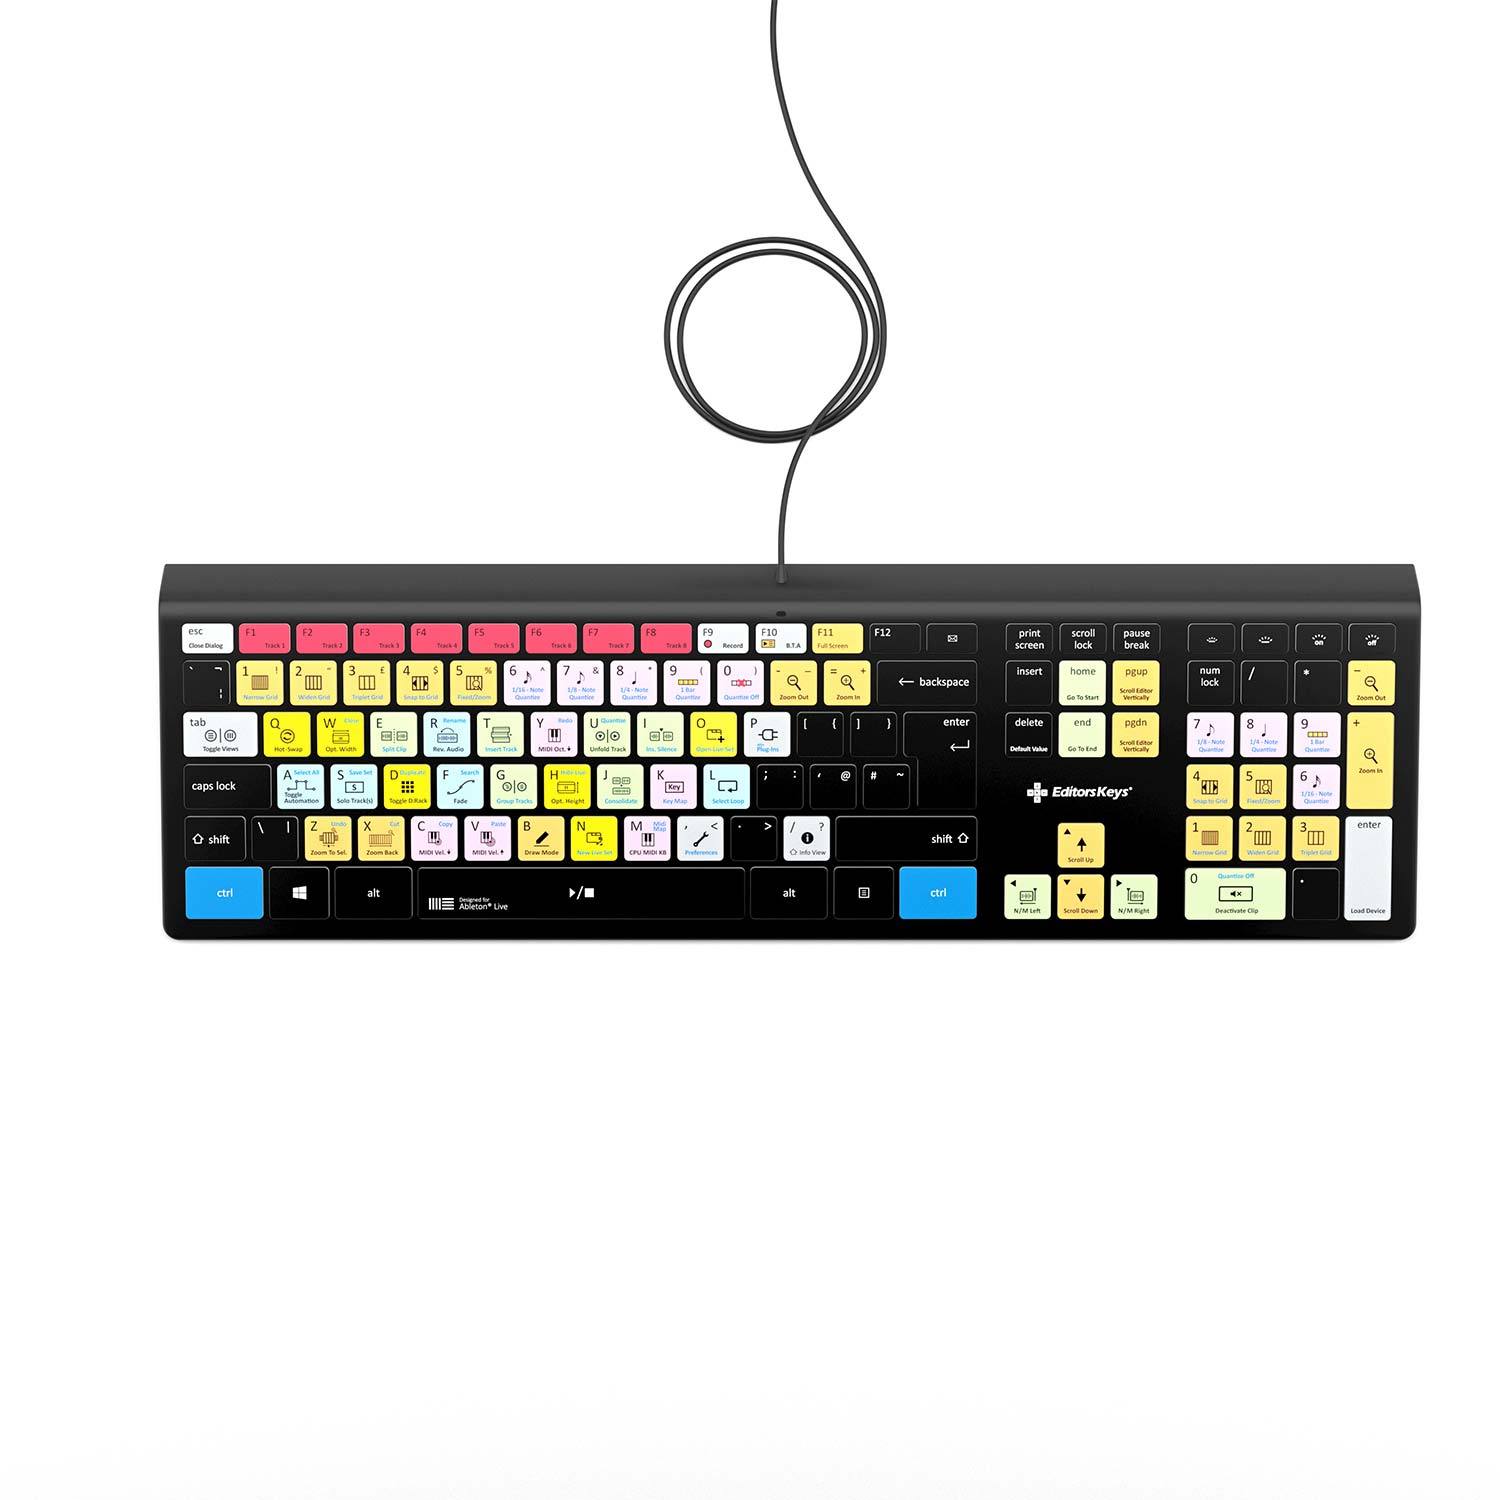 Ableton Live Keyboard - Backlit - For Mac or PC - Editors Keys